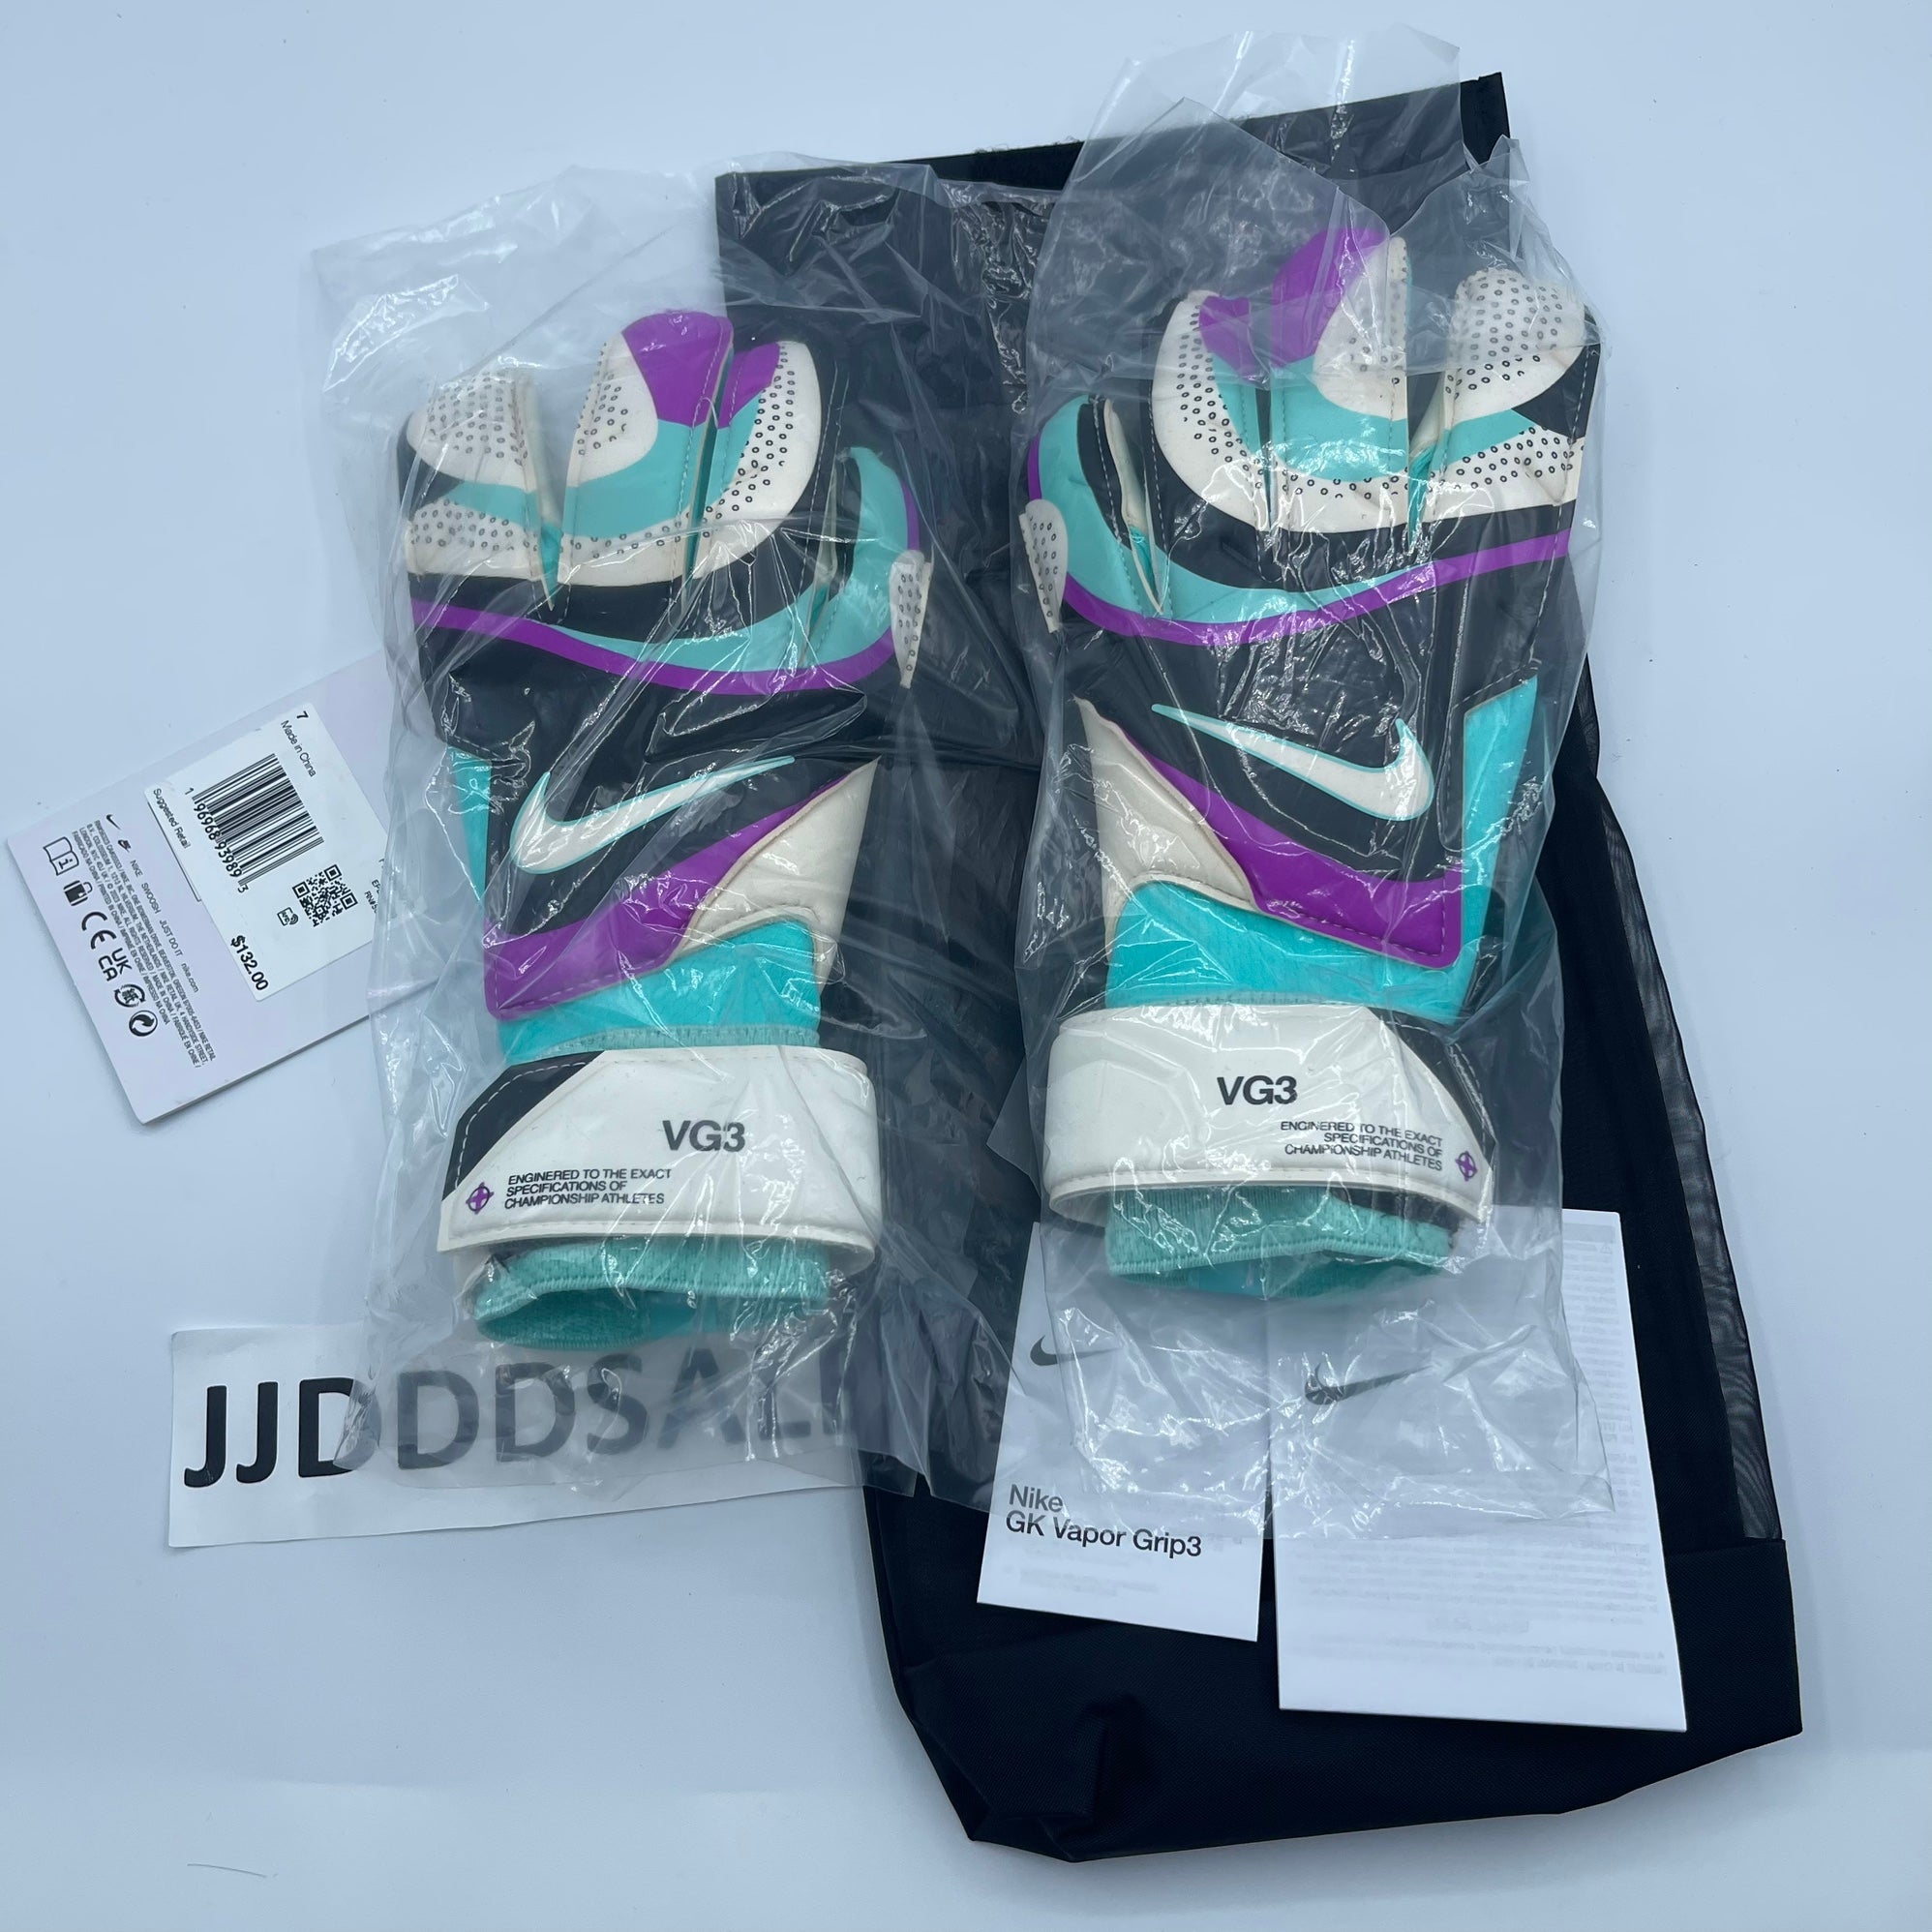 Used Nike Vapor Grip 3 7 Soccer Goalie Gloves | SidelineSwap